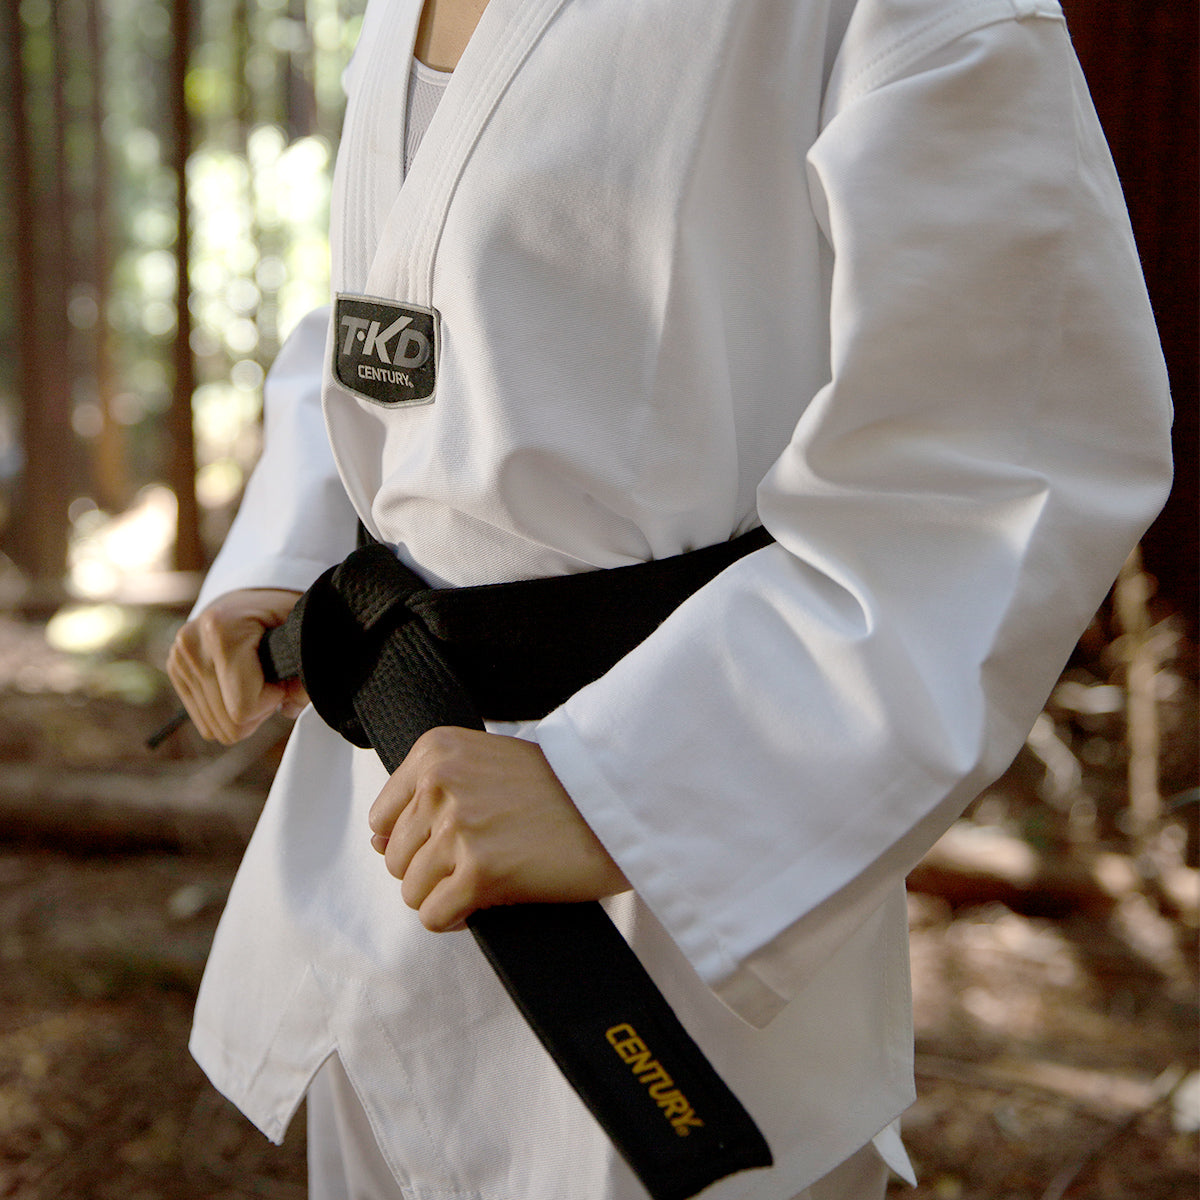 Century Martial Arts, Martial Arts Uniforms & Gear